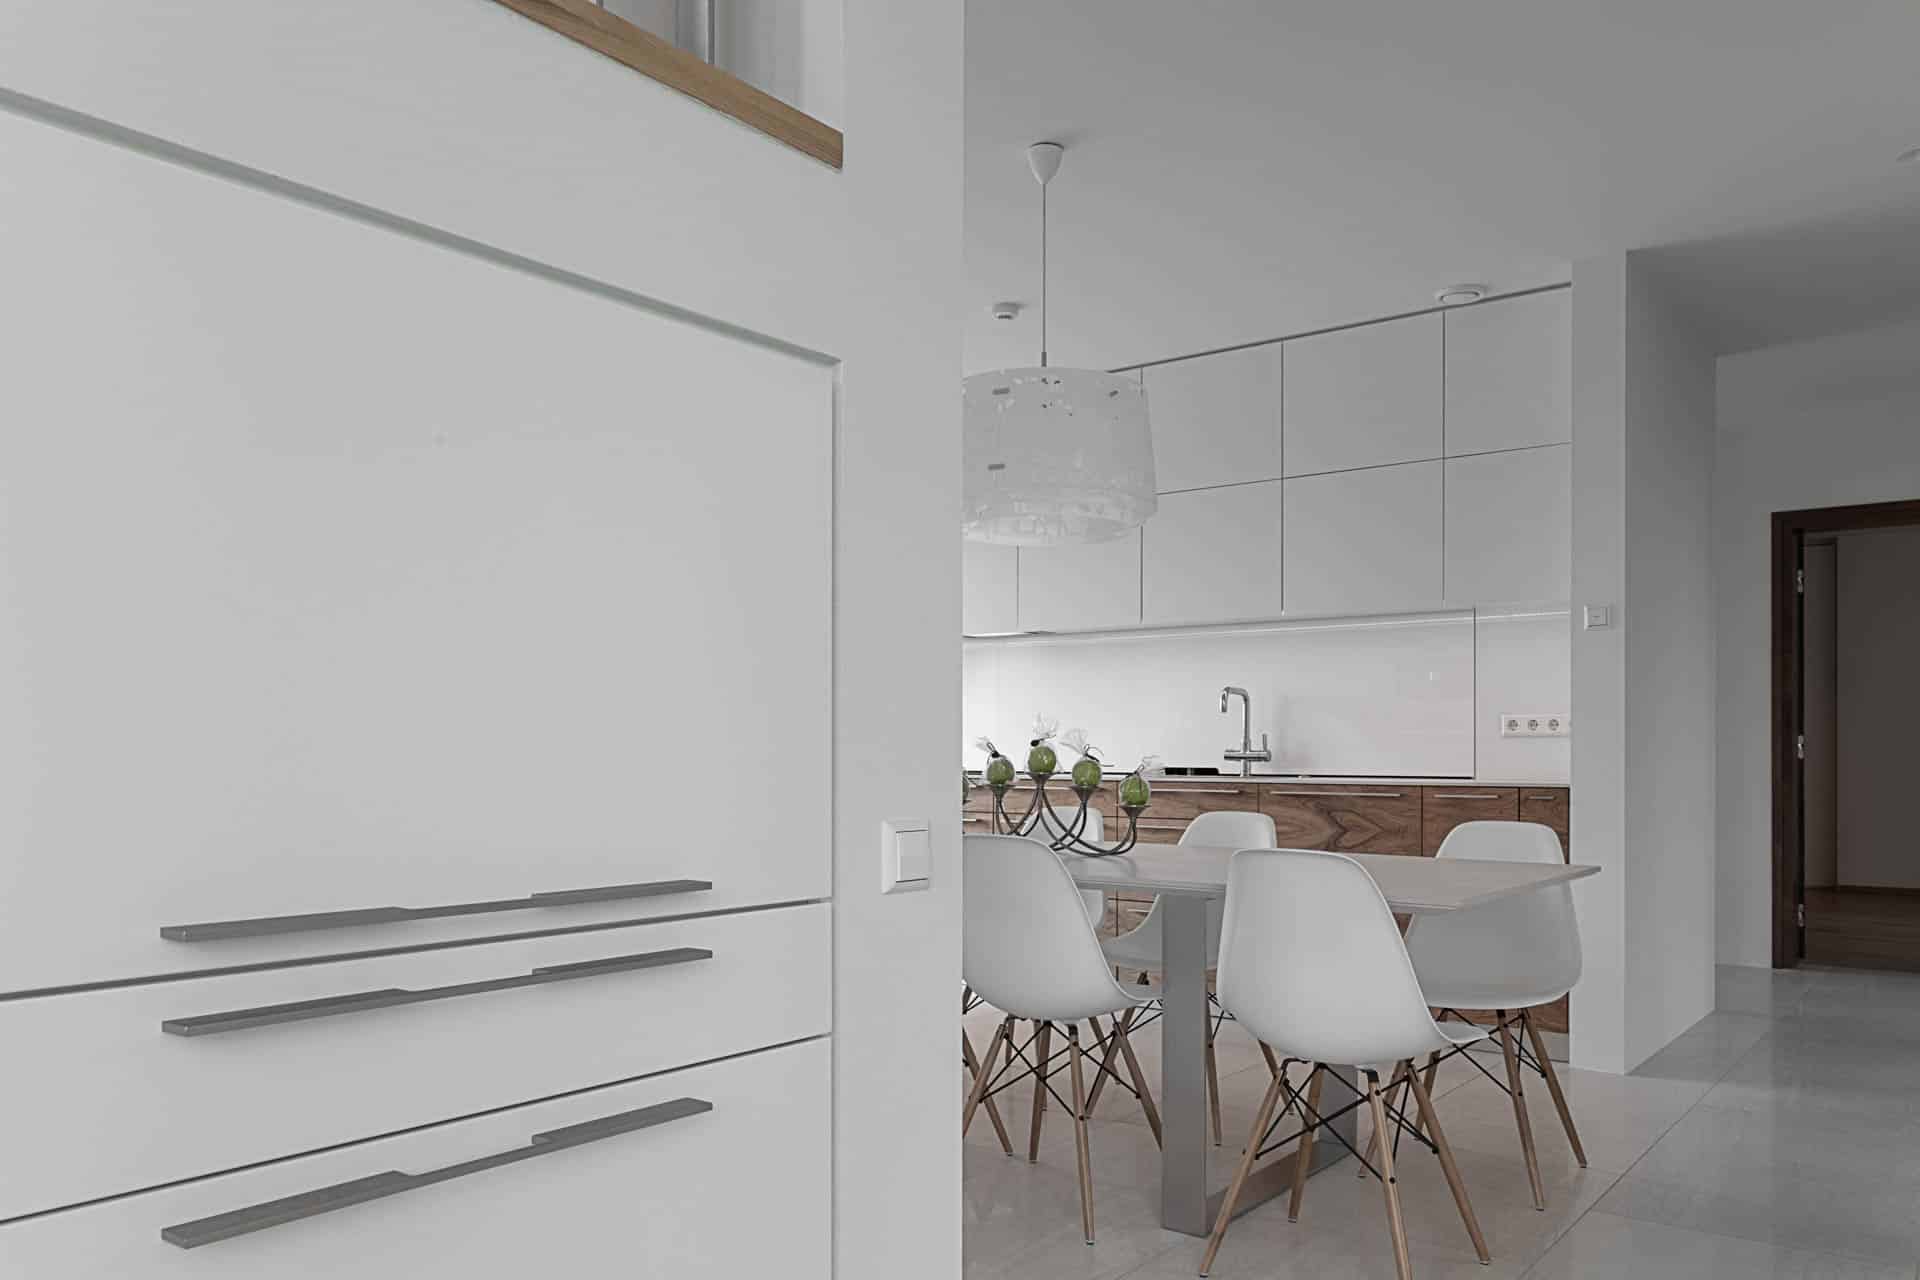 White kitchen furniture